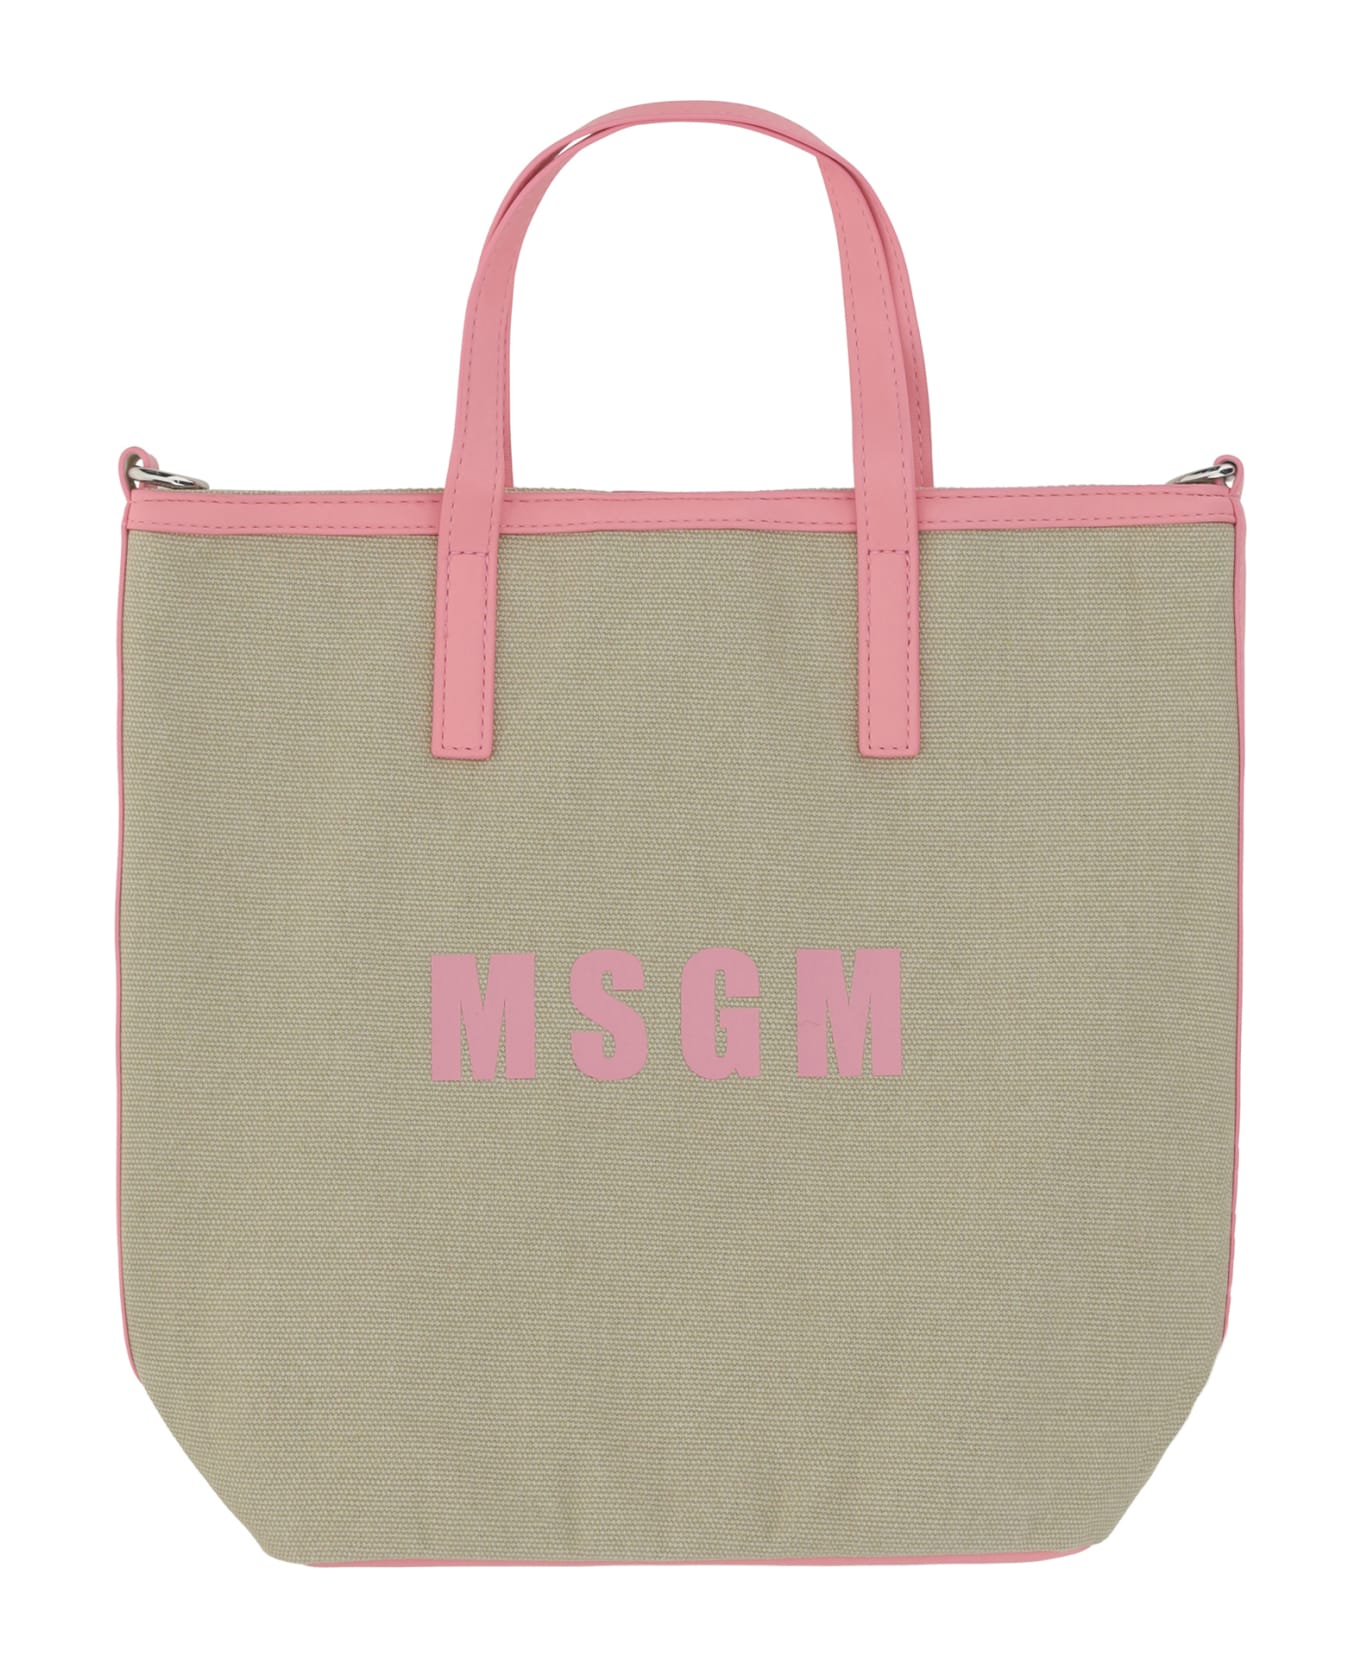 MSGM Small Shopping Handbag - 13